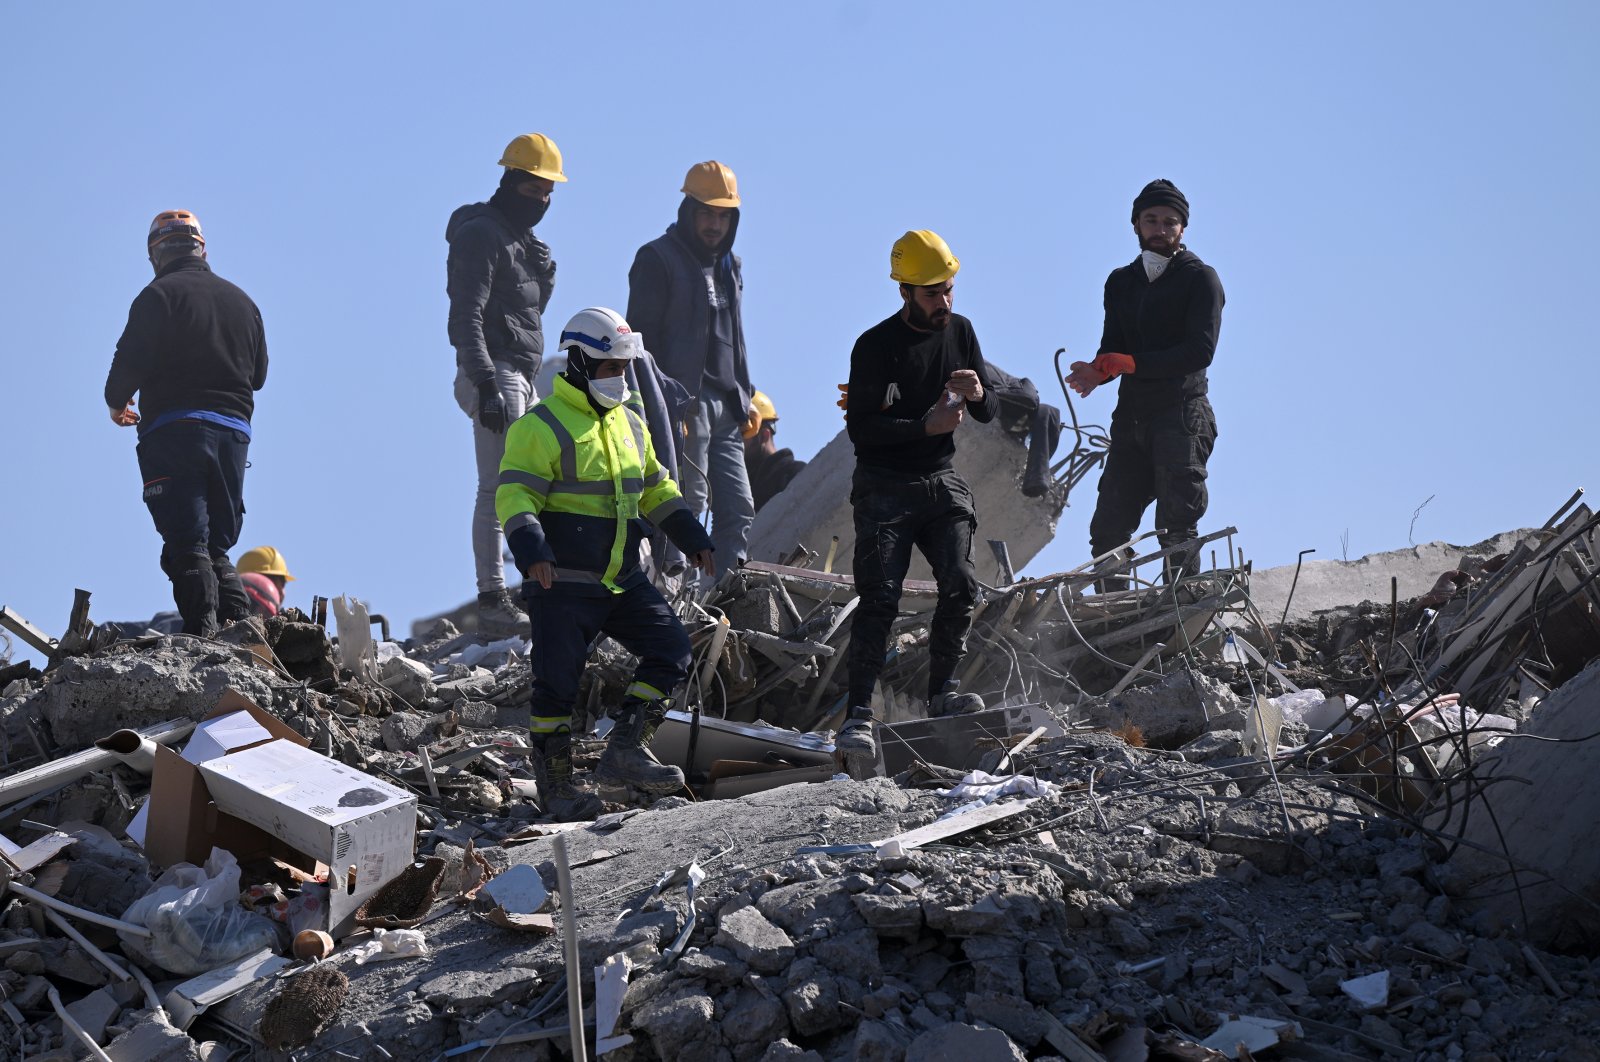 Korban selamat lainnya ditarik dari puing-puing 203 jam setelah gempa Türkiye